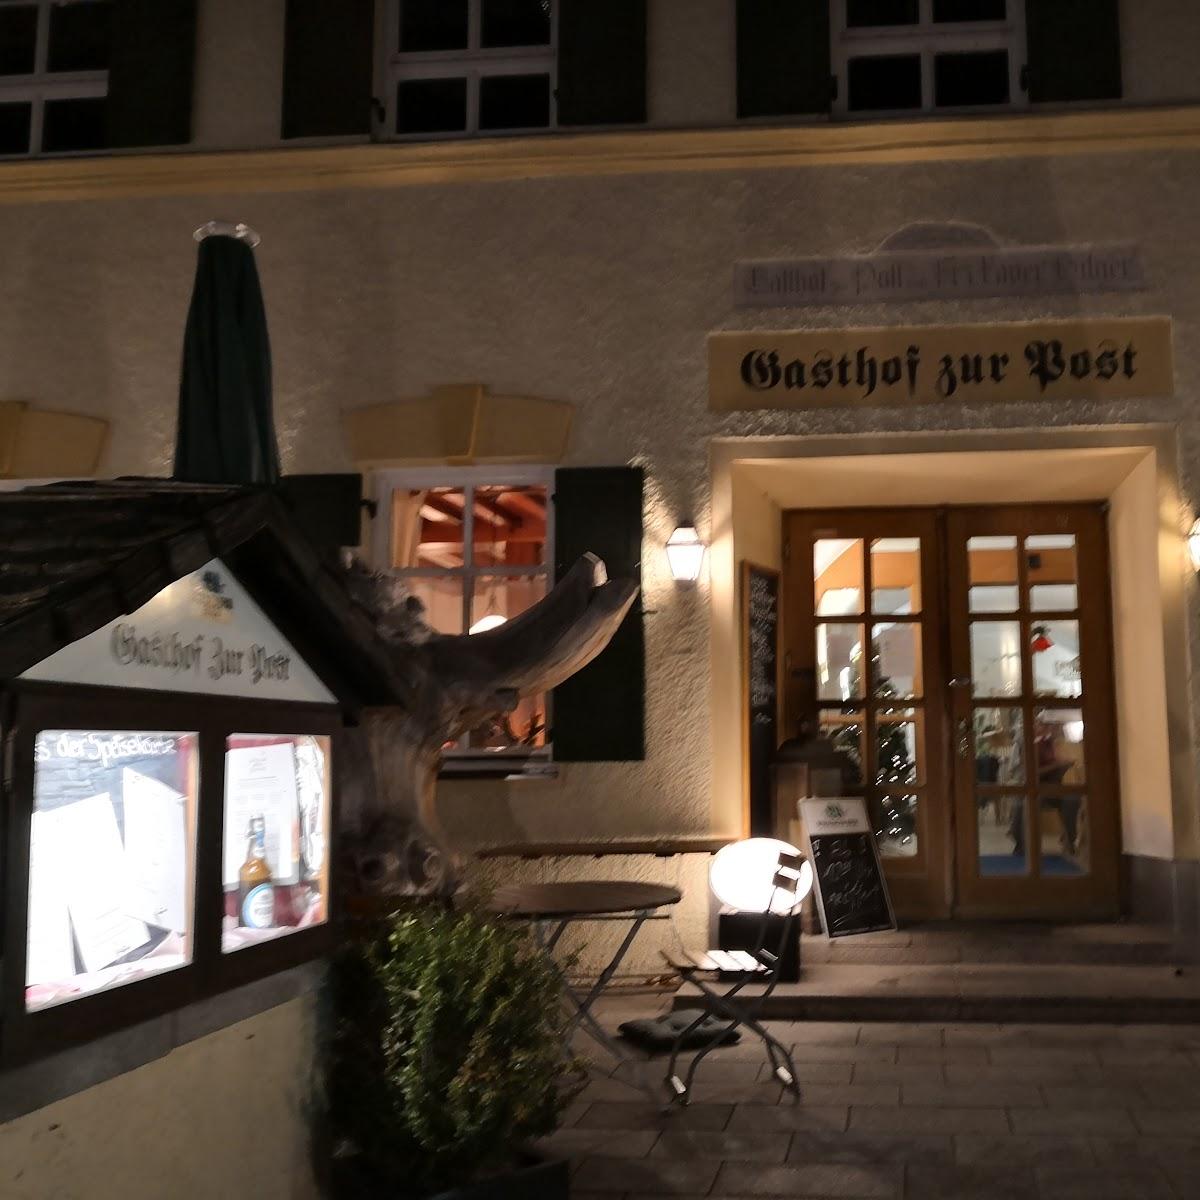 Restaurant "Gasthof zur Post" in  Grassau